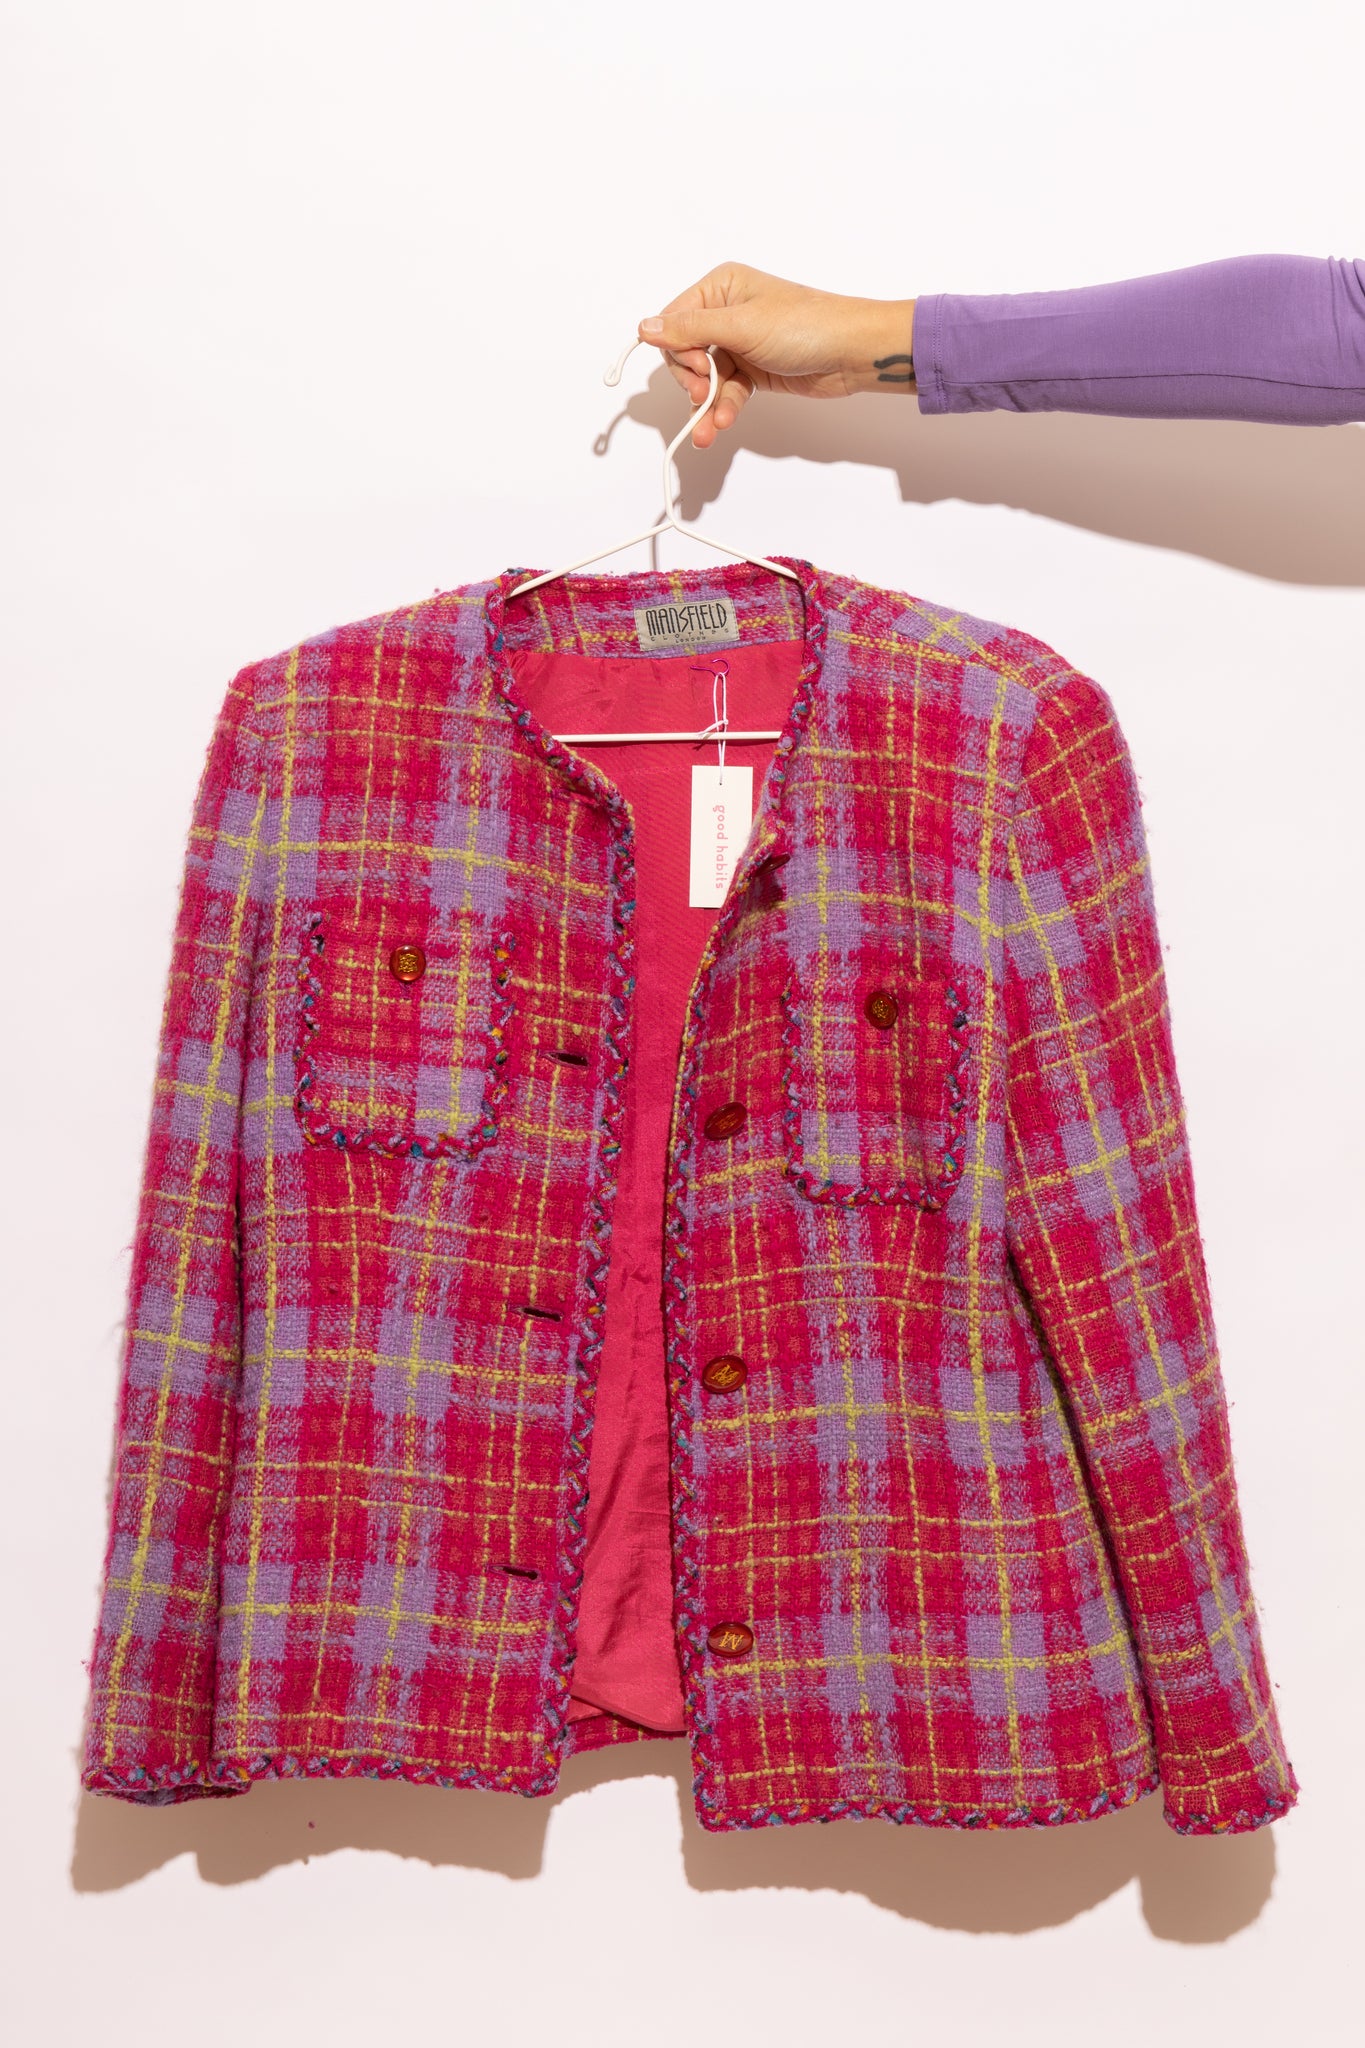 Pink Plaid Wool Jacket (M-L)